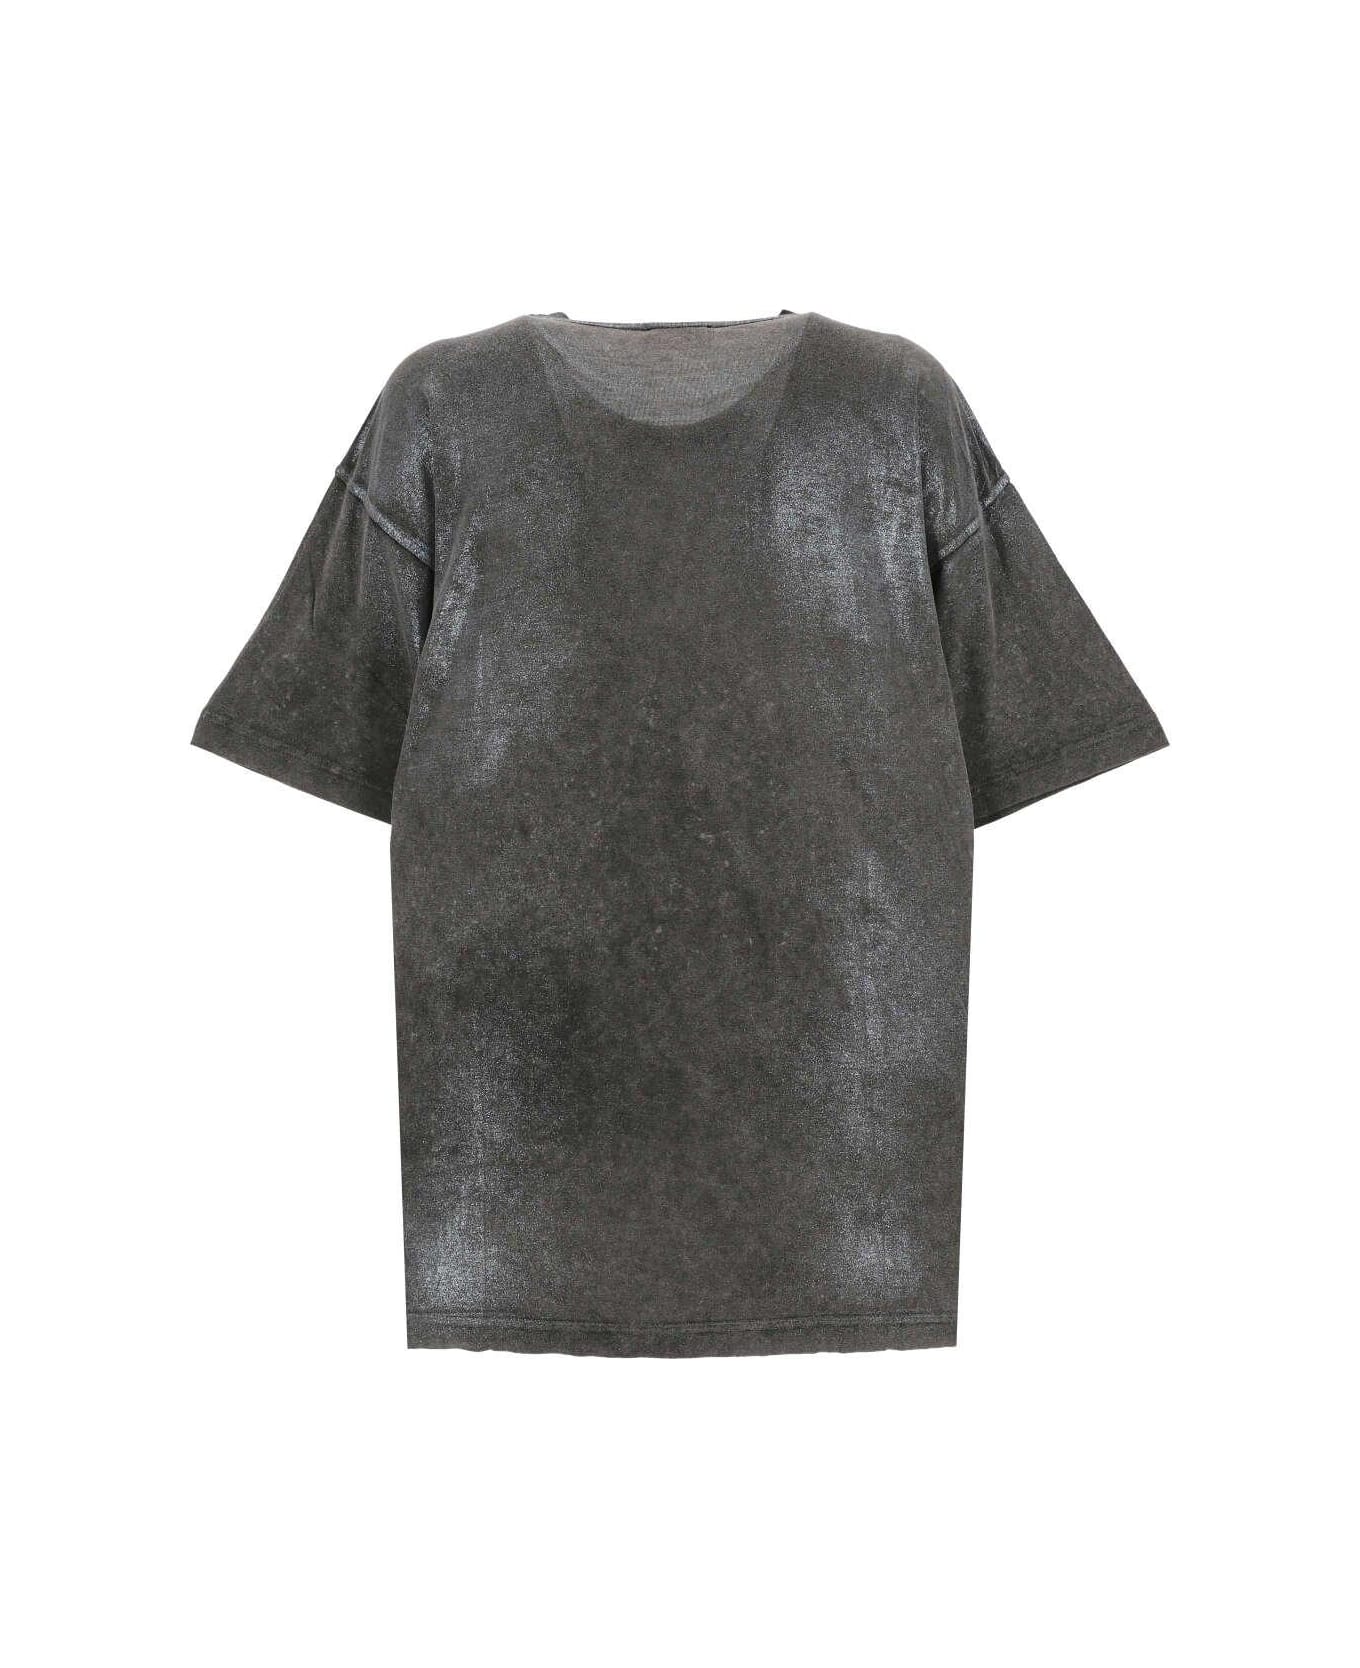 Diesel T-buxt Faded Metallic T-shirt - BLACK/GREY